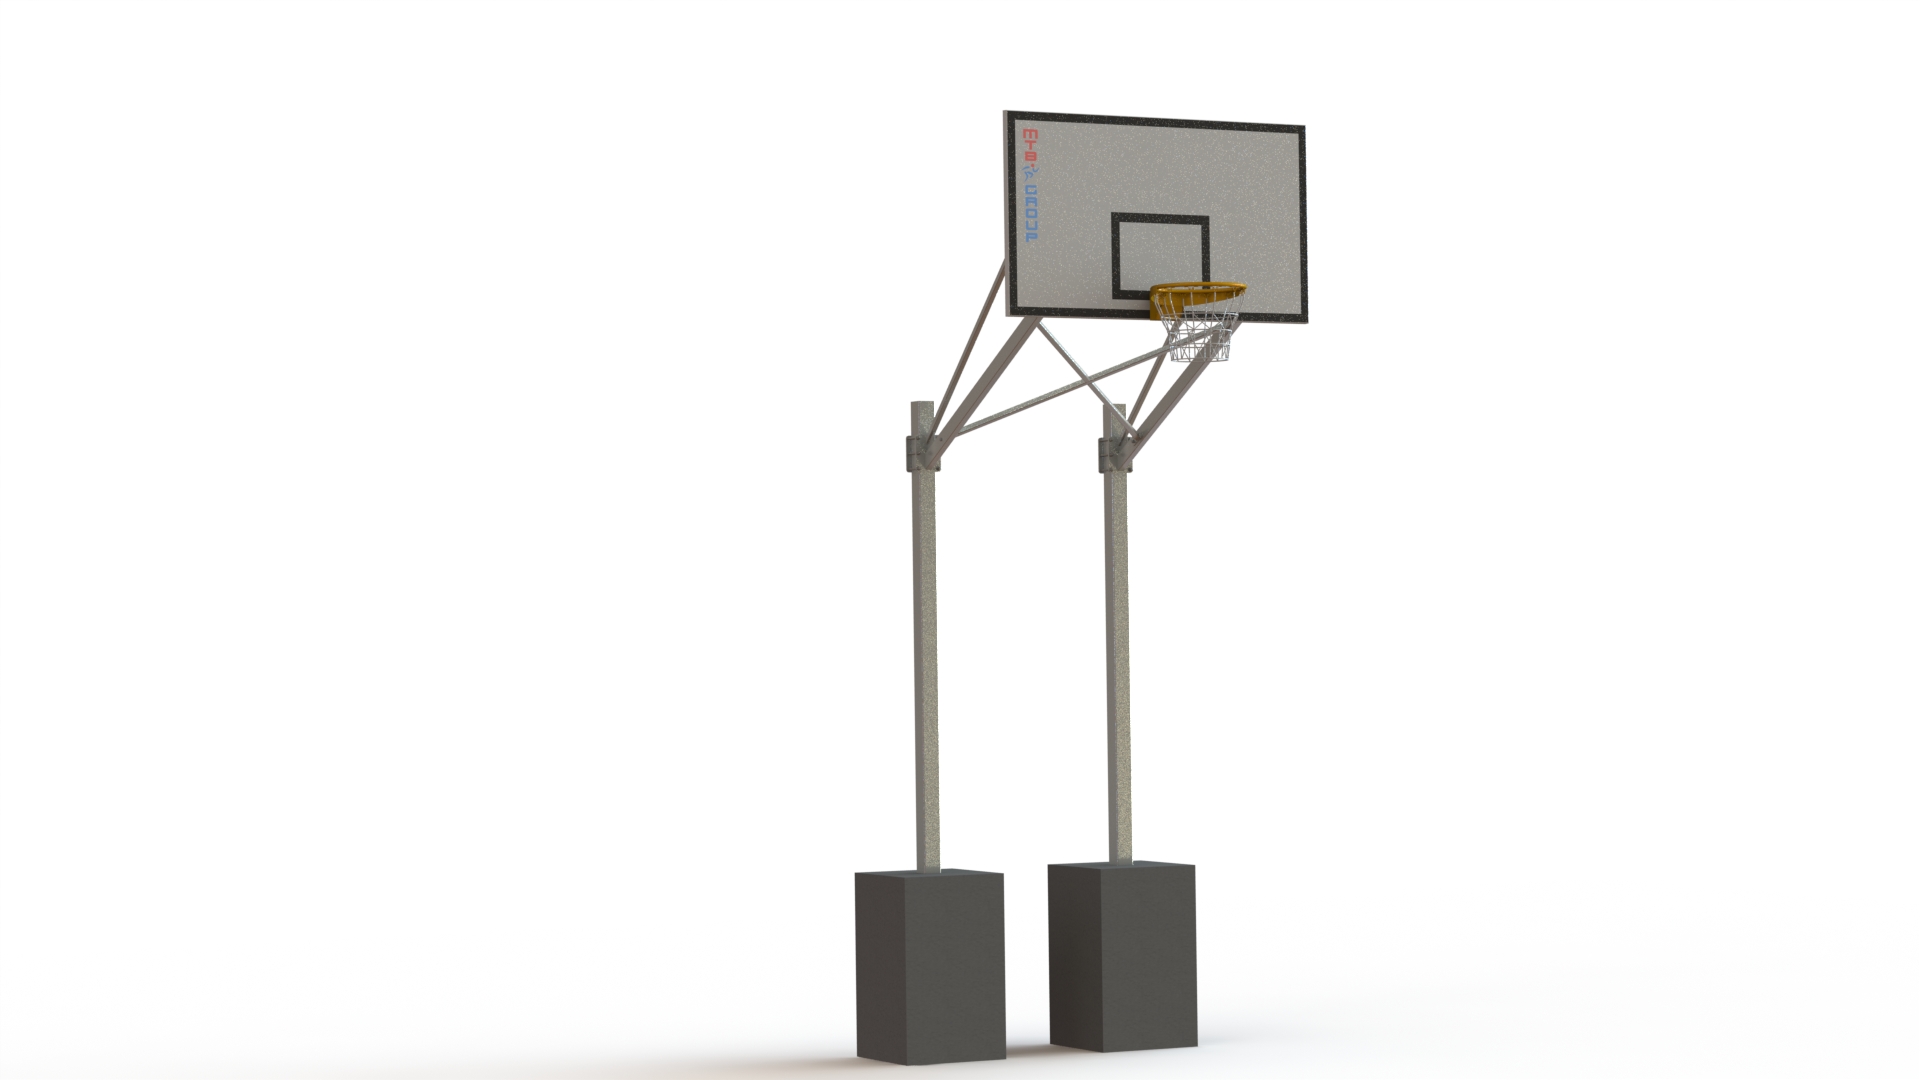 Basketbalová konstrukce dvousloupová, výsun 2,2 m, 